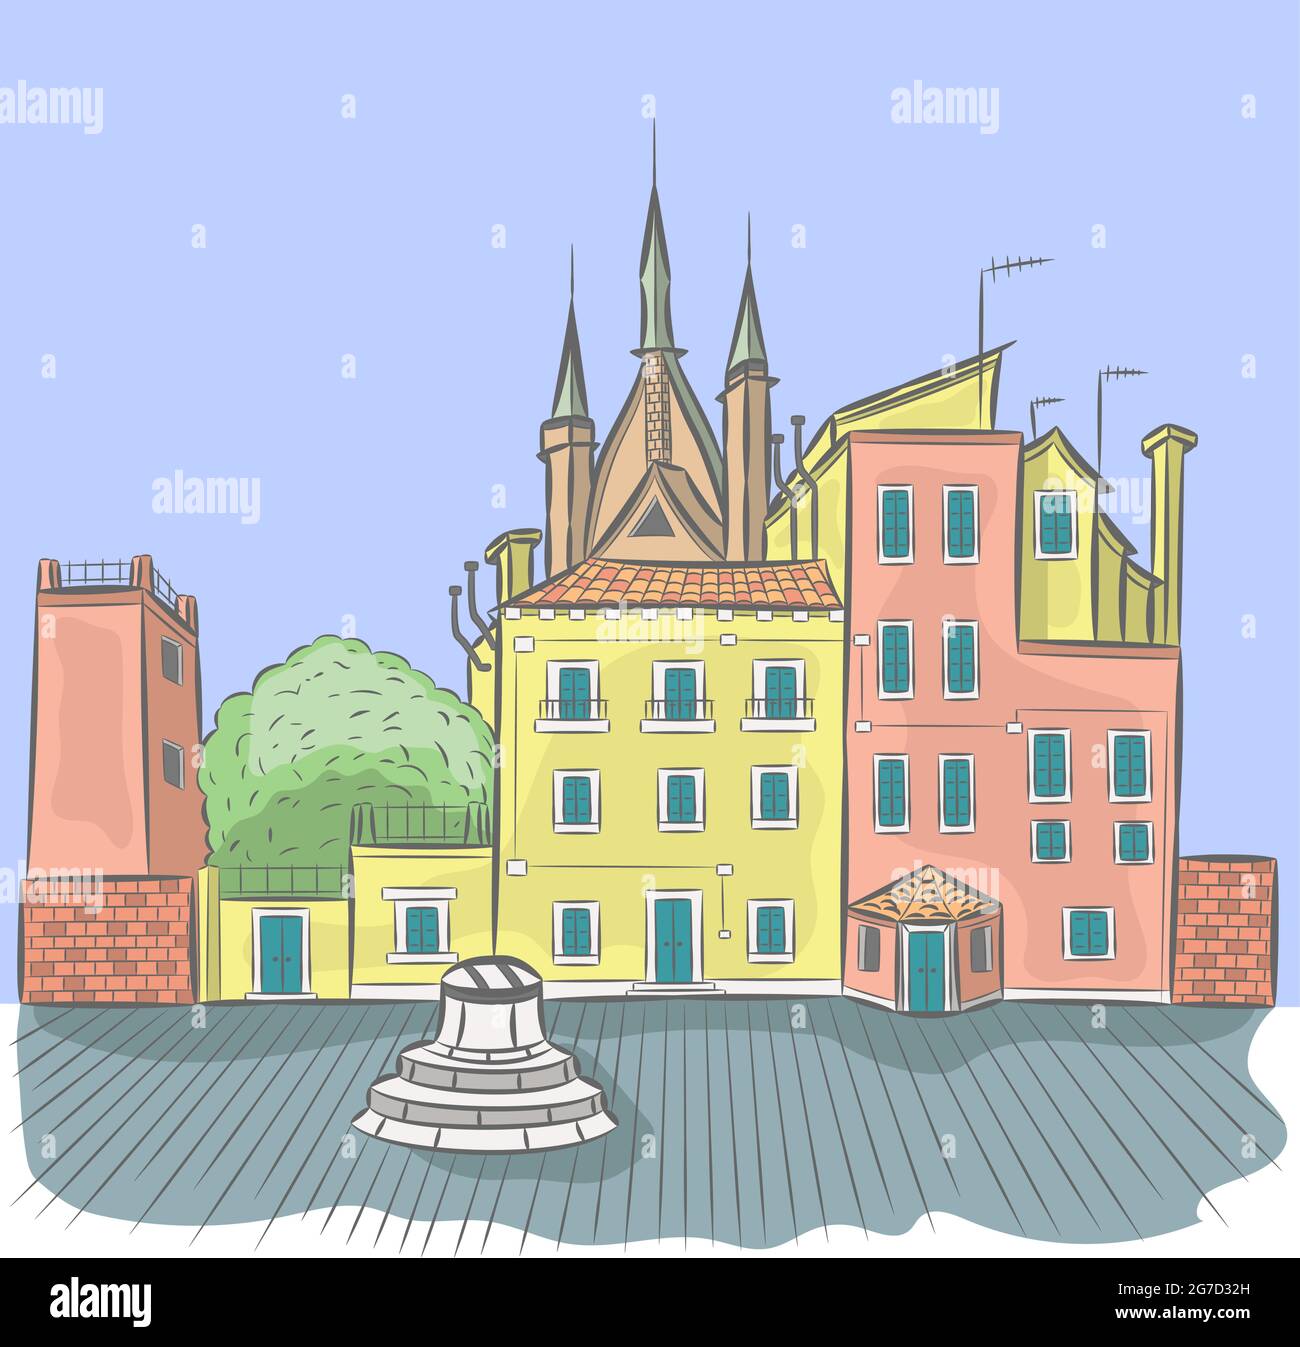 Illustration vectorielle d'une ancienne place vénitienne avec un puits. Venise. Italie. Illustration de Vecteur